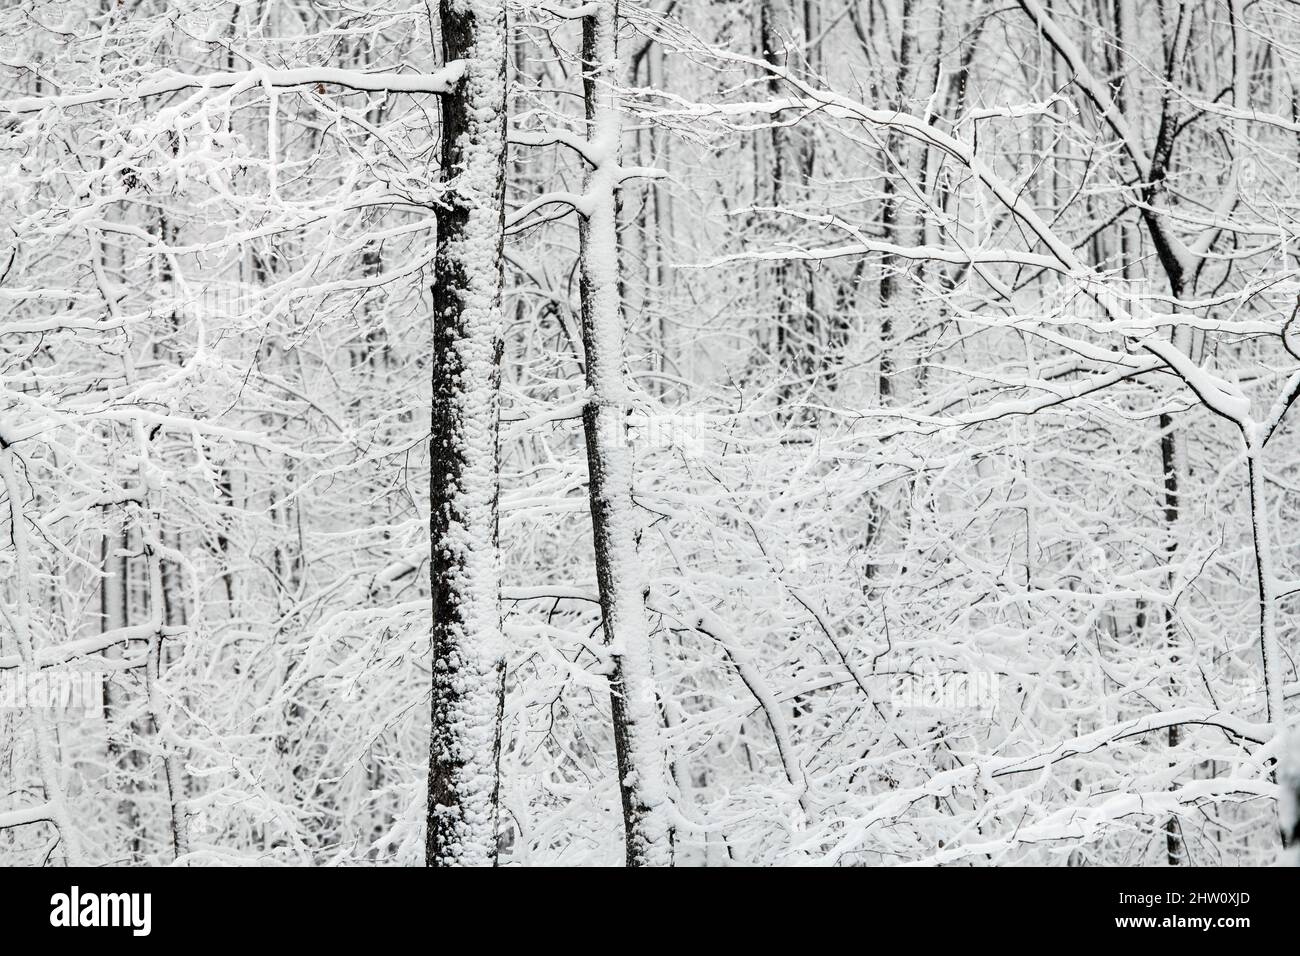 Woodland snow scenic. Stock Photo